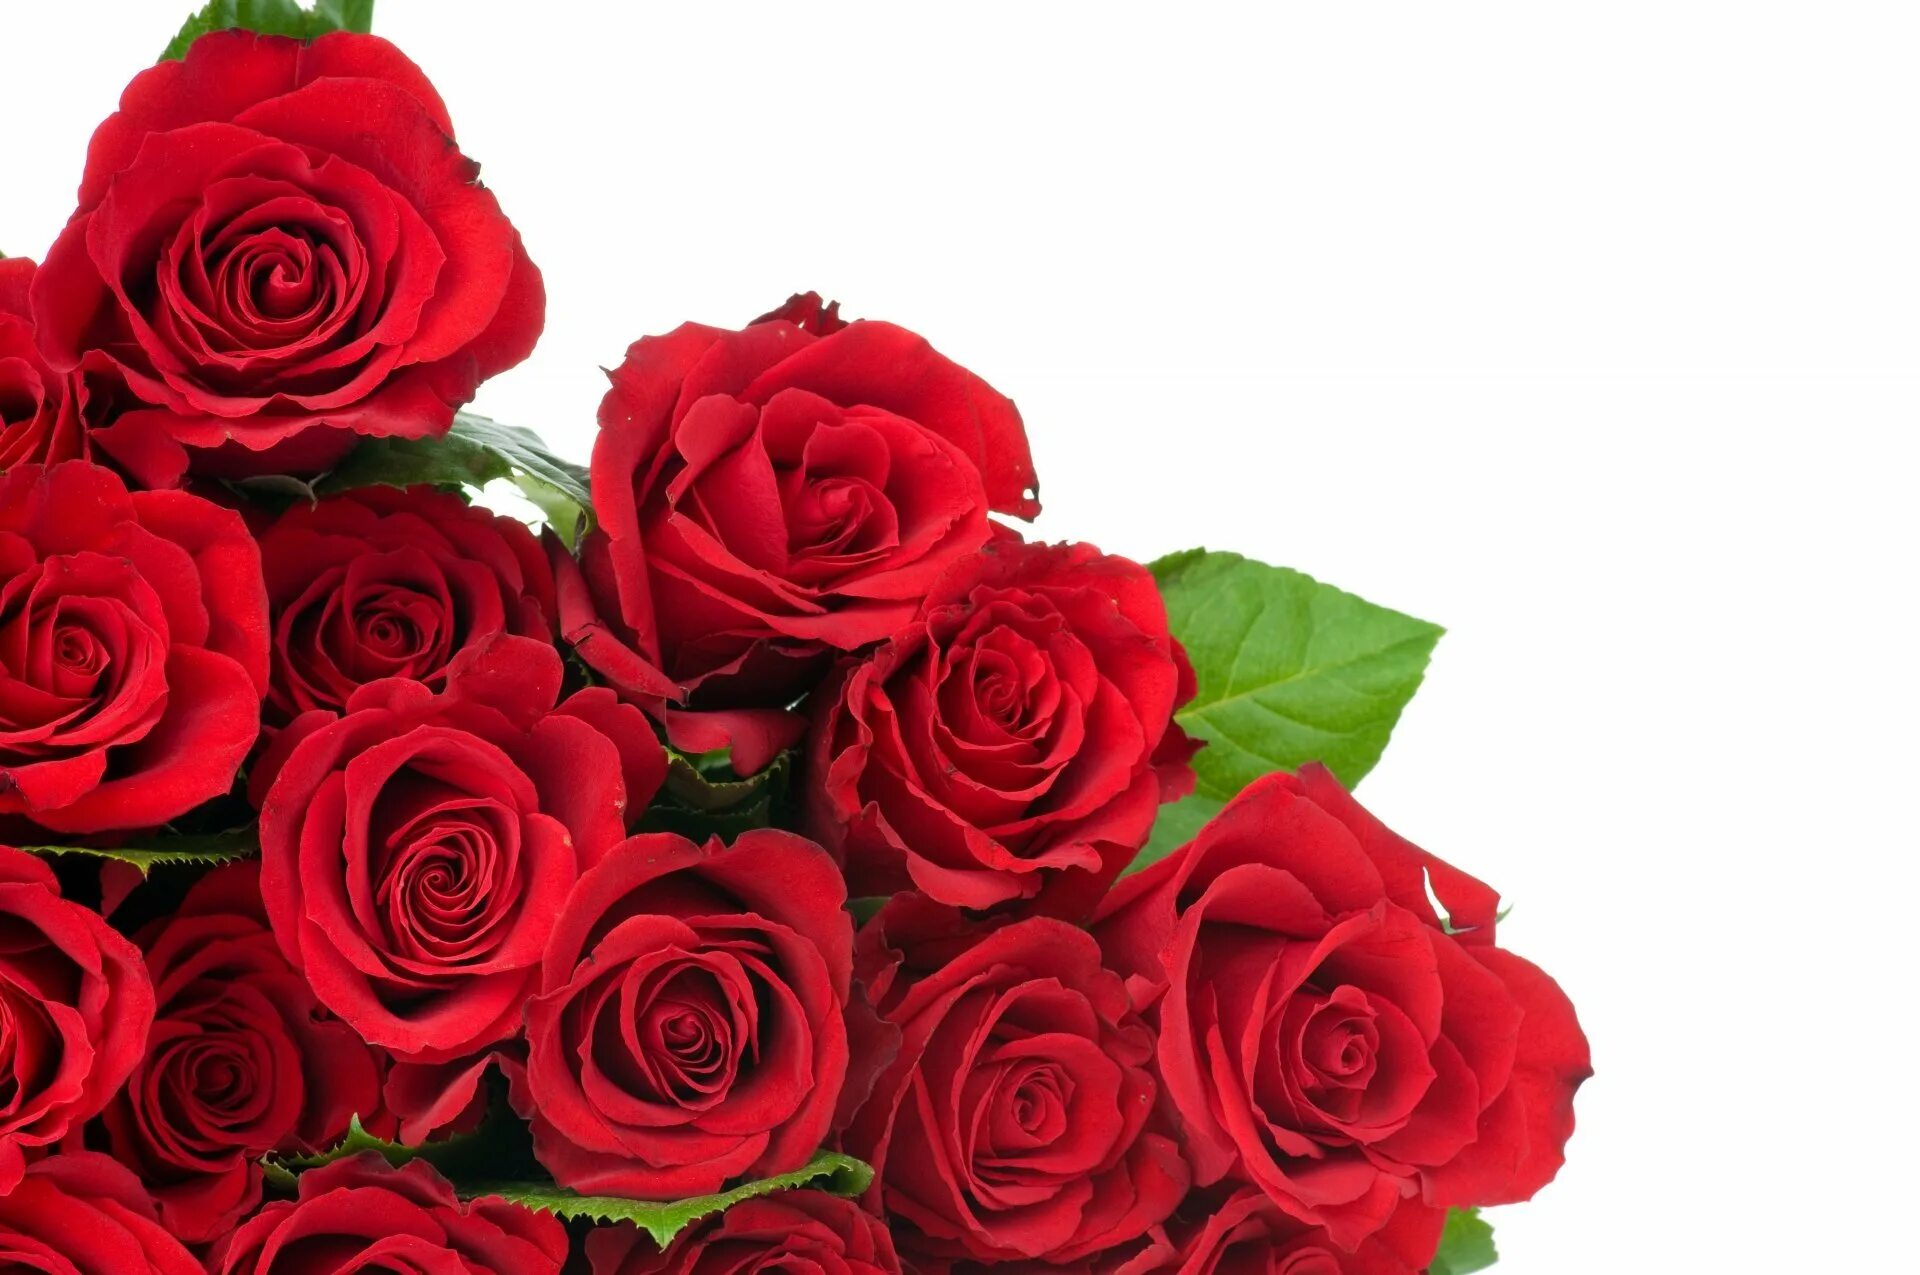 Красивый букет красных роз. Buket krasnix roz. Букет роз на прозрачном фоне.